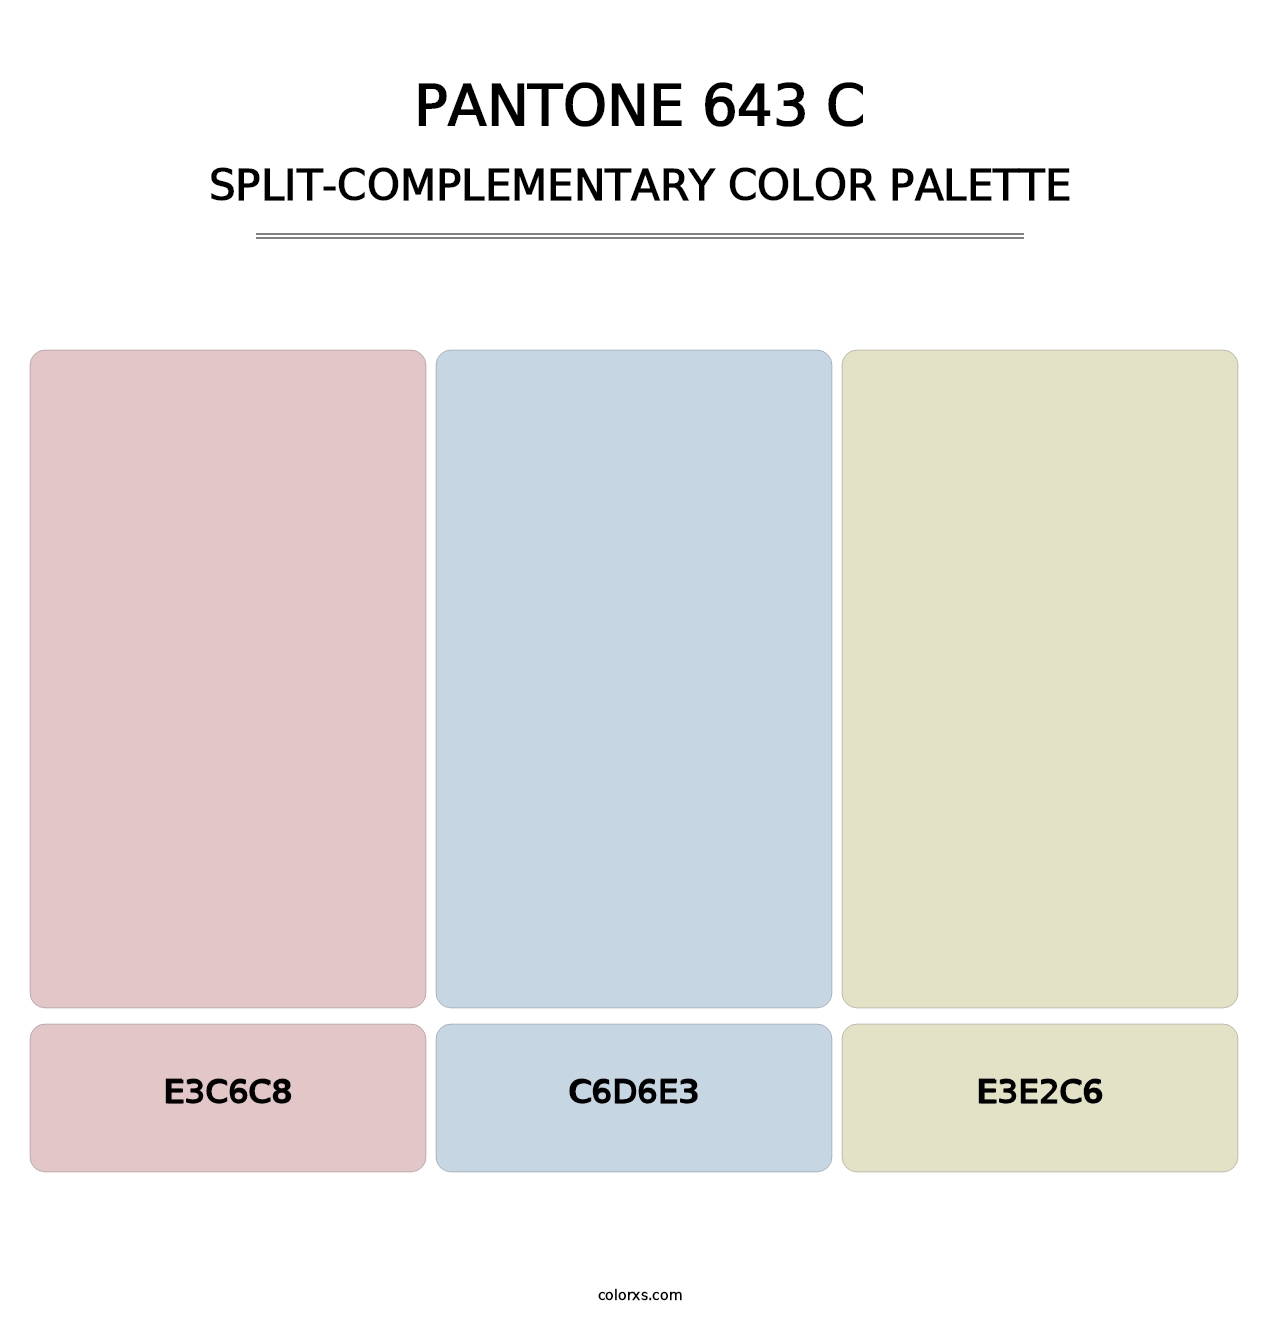 PANTONE 643 C - Split-Complementary Color Palette